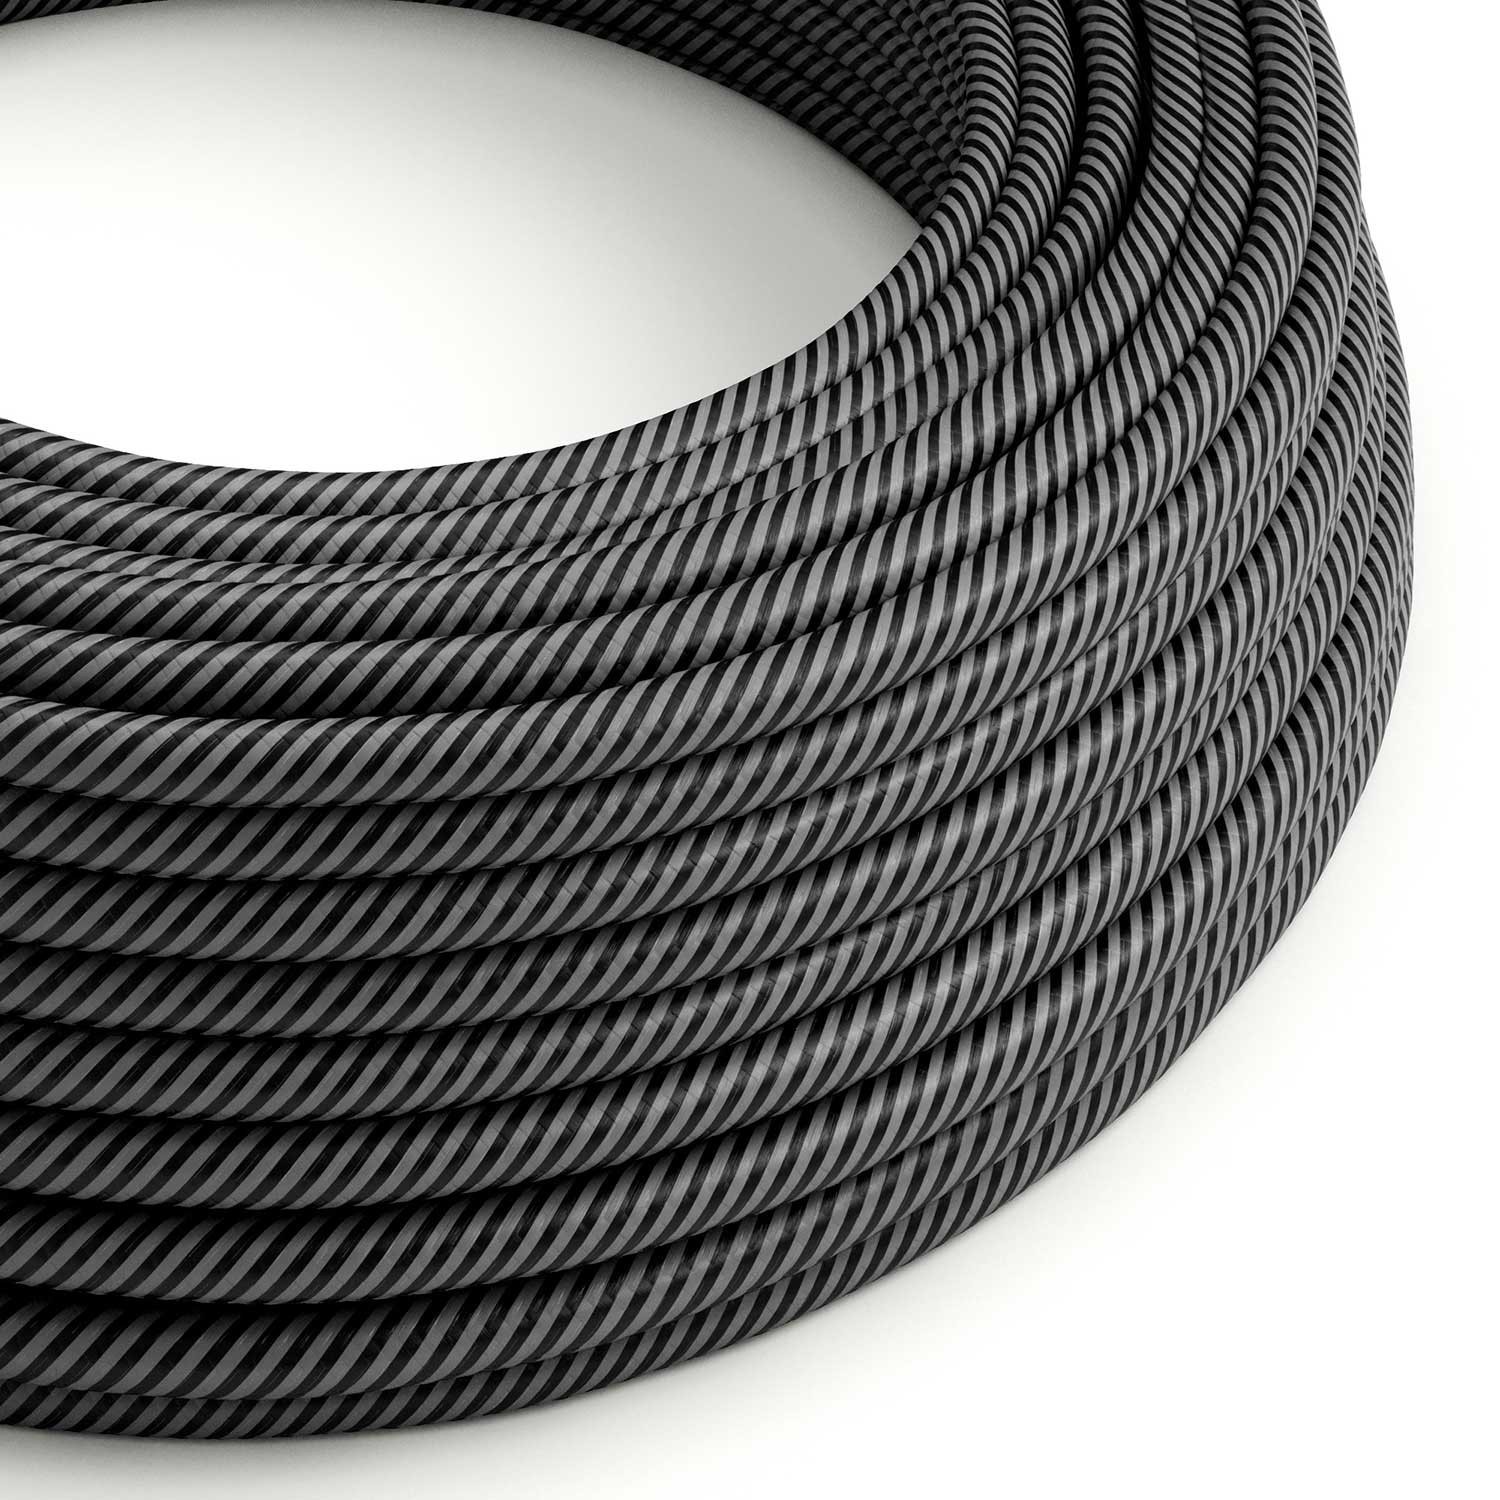 Câble textile Graphite et Noir Charbon Vertigo brillant - L'Original Creative-Cables - ERM38 rond 2x0,75mm / 3x0,75mm